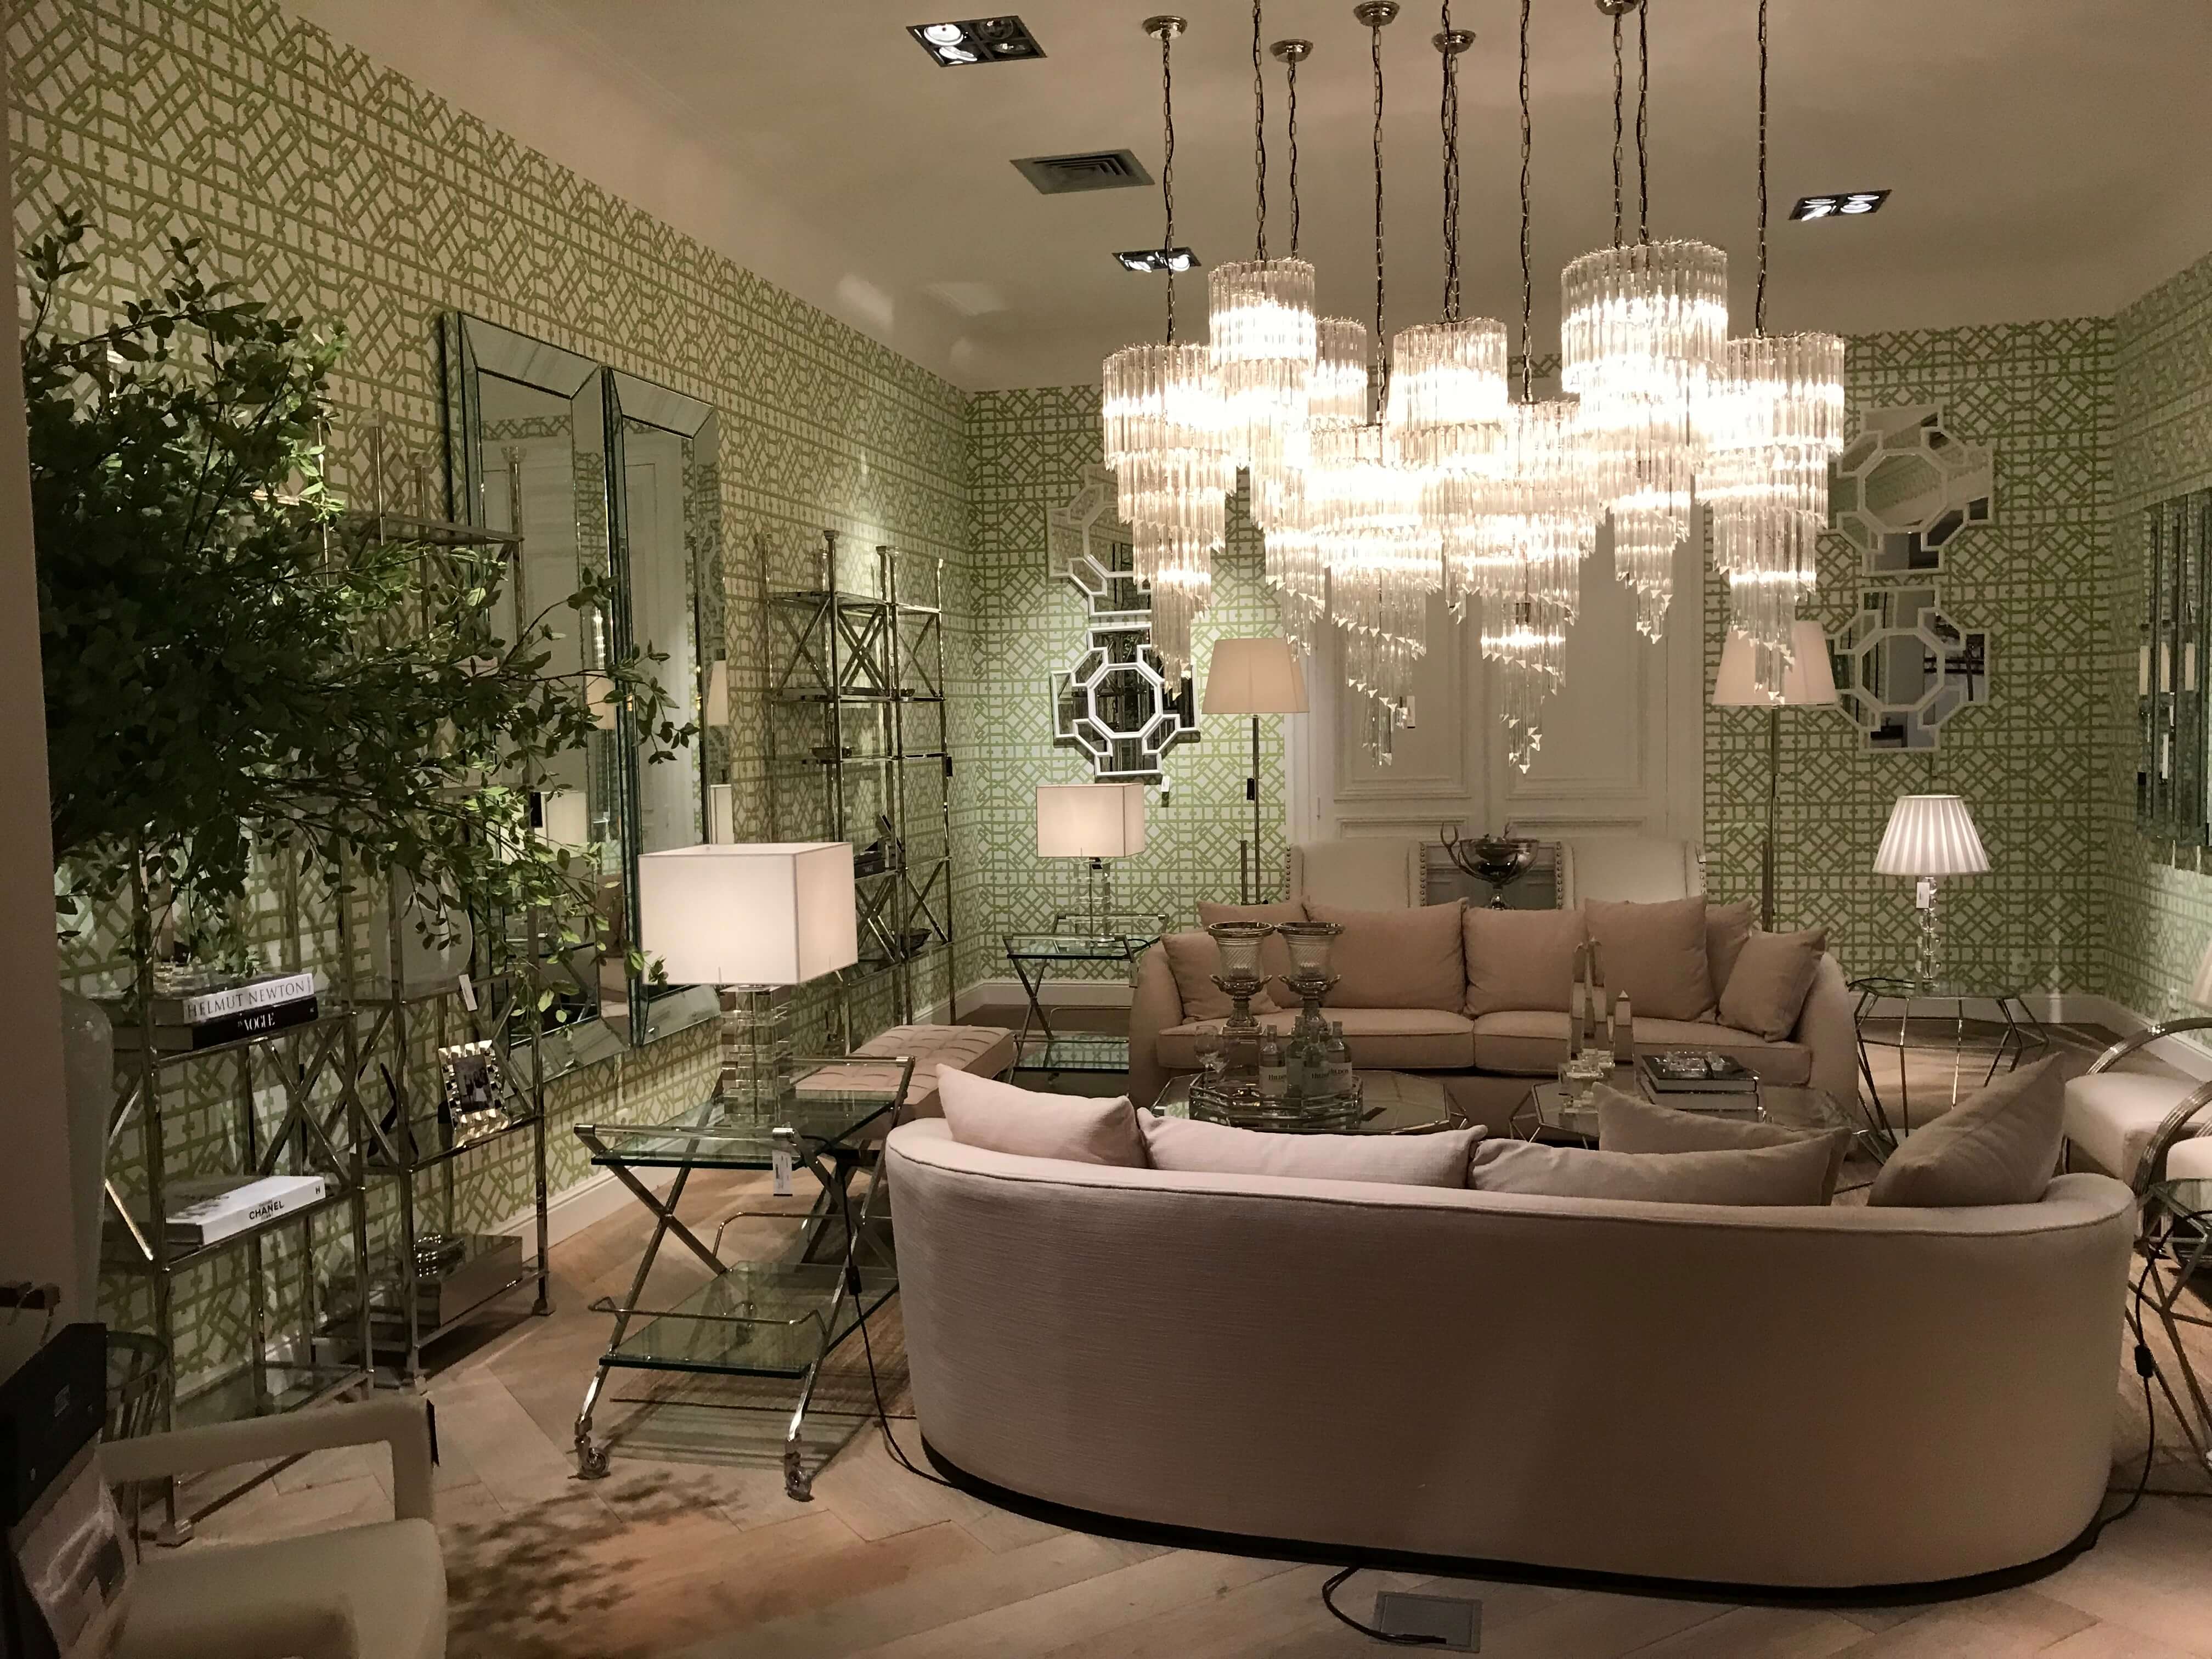 Helles Wohnzimmer mit Luxus Möbeln und opulentem Kronleuchter von Eichholtz